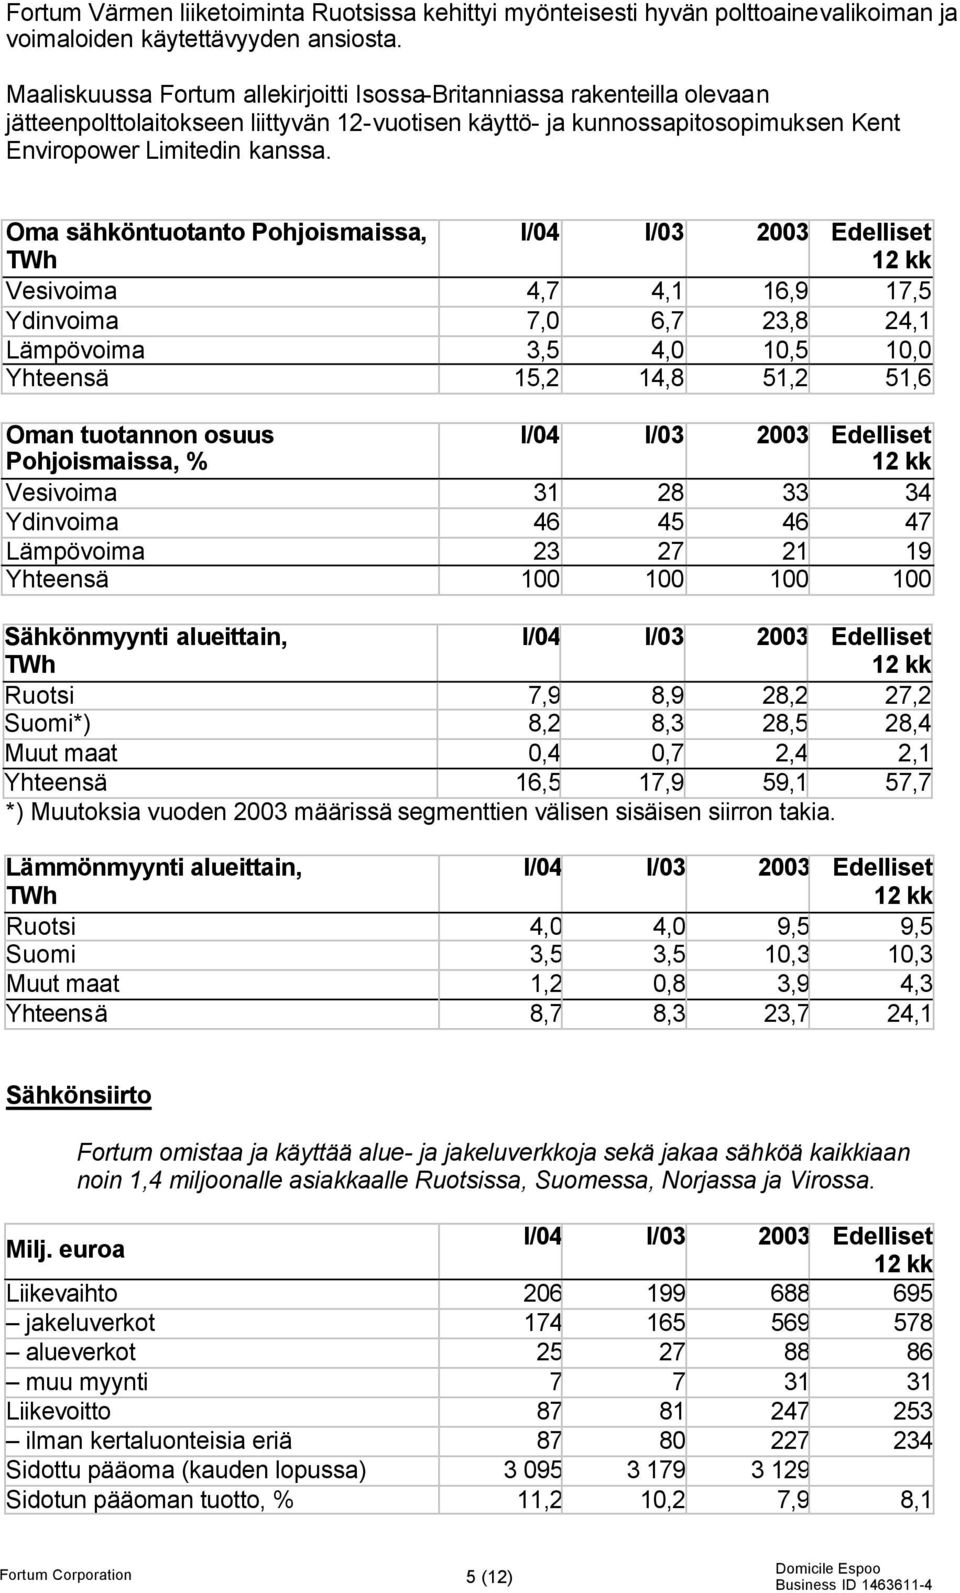 Oma sähköntuotanto Pohjoismaissa, TWh I/04 I/03 2003 Edelliset Vesivoima 4,7 4,1 16,9 17,5 Ydinvoima 7,0 6,7 23,8 24,1 Lämpövoima 3,5 4,0 10,5 10,0 Yhteensä 15,2 14,8 51,2 51,6 Oman tuotannon osuus